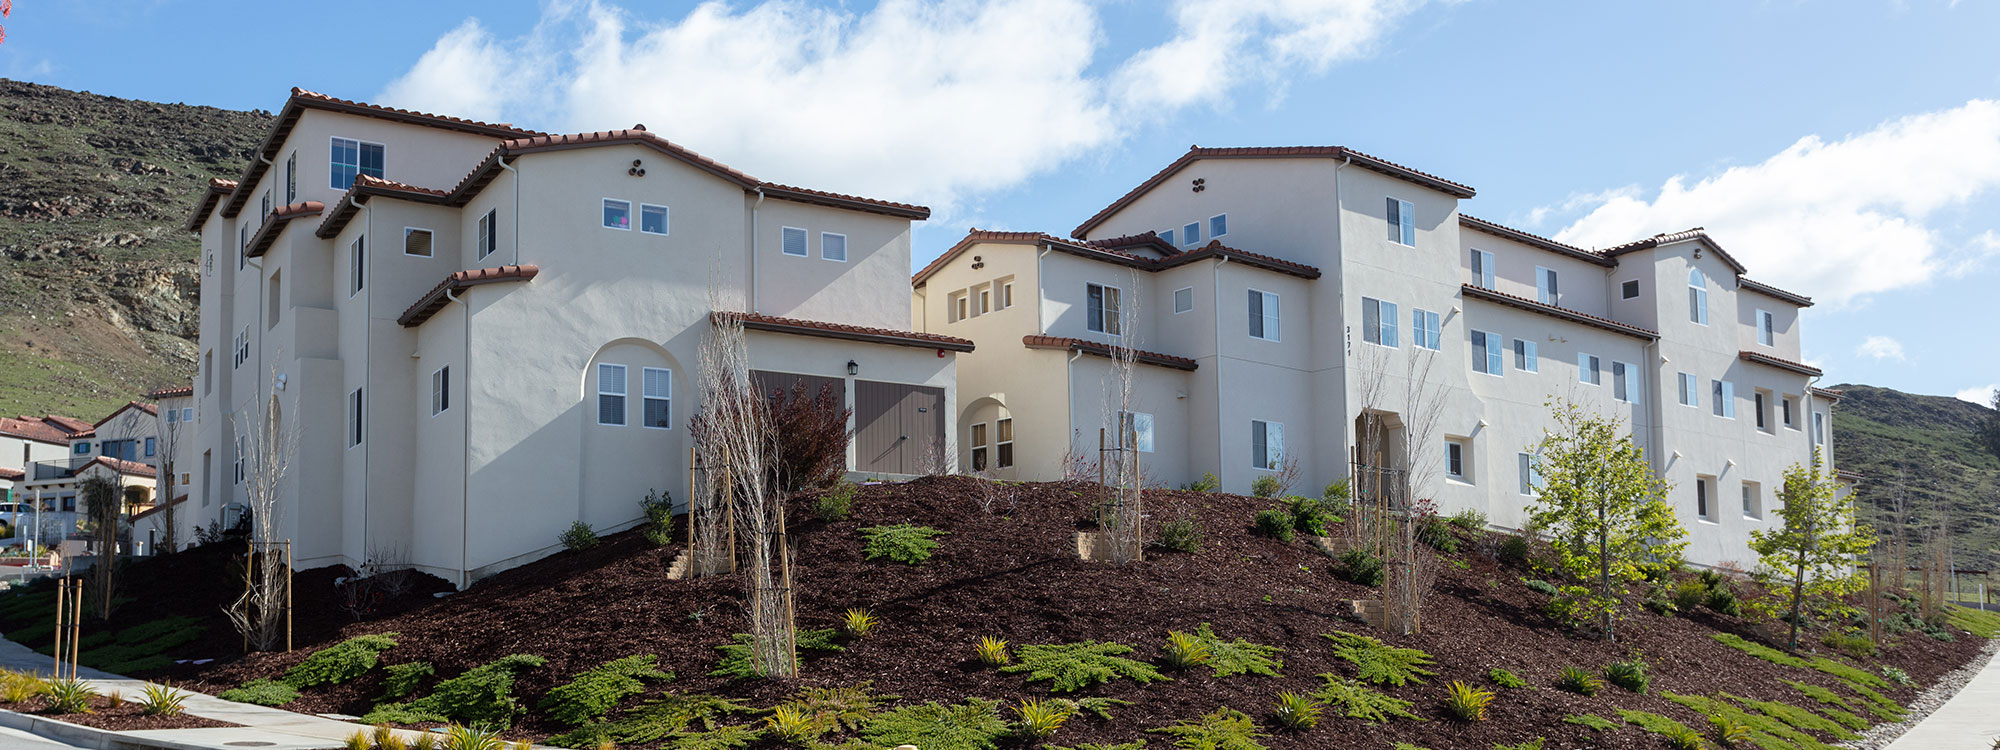 San Luis Obispo Construction Company - Affordable Housing Apartment Building Builder - JW Design & Construction